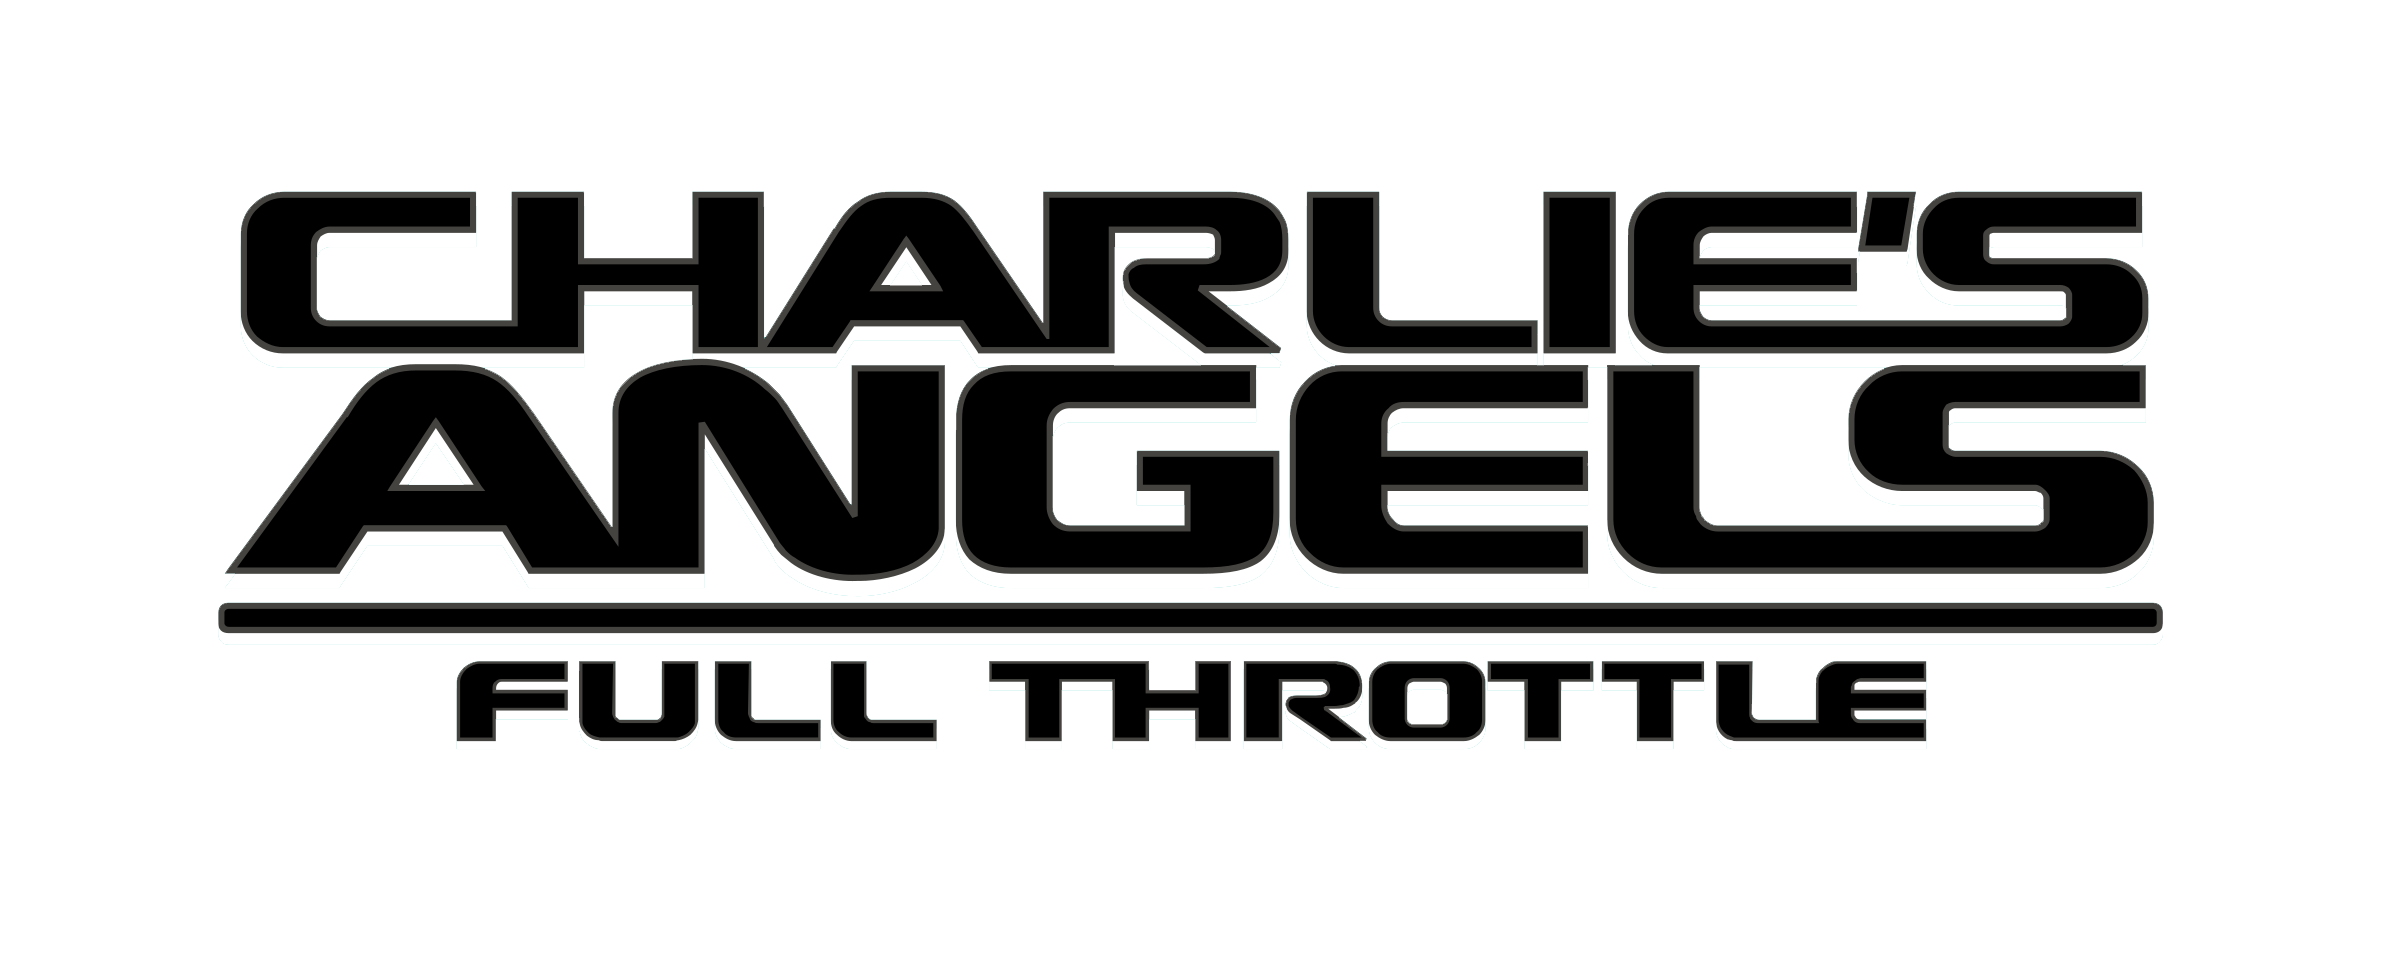 charlies-angels-2-logo.png